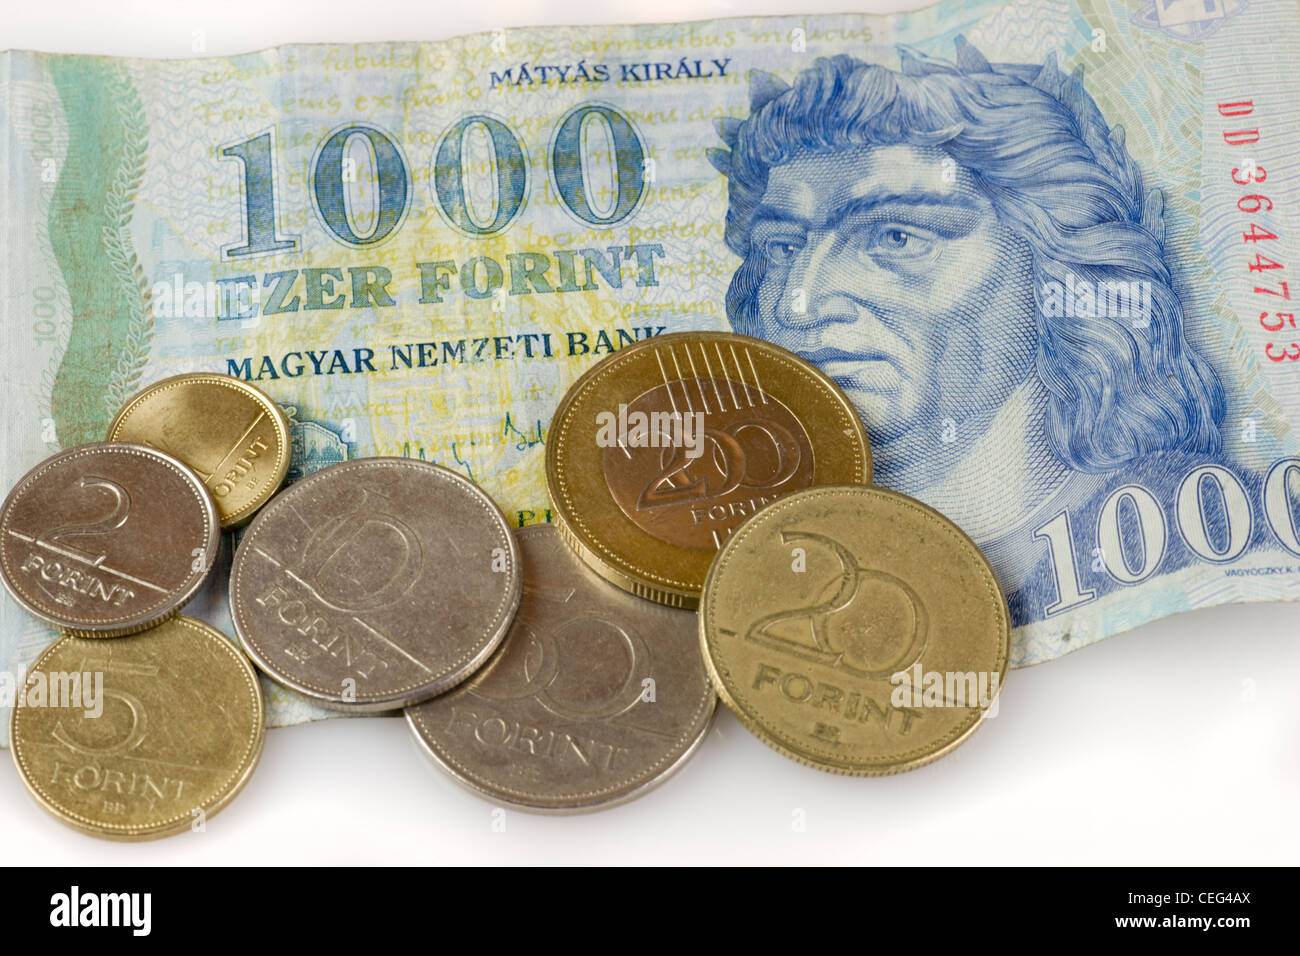 Monnaie hongroise, Forint 1000 remarque et pièces Photo Stock - Alamy